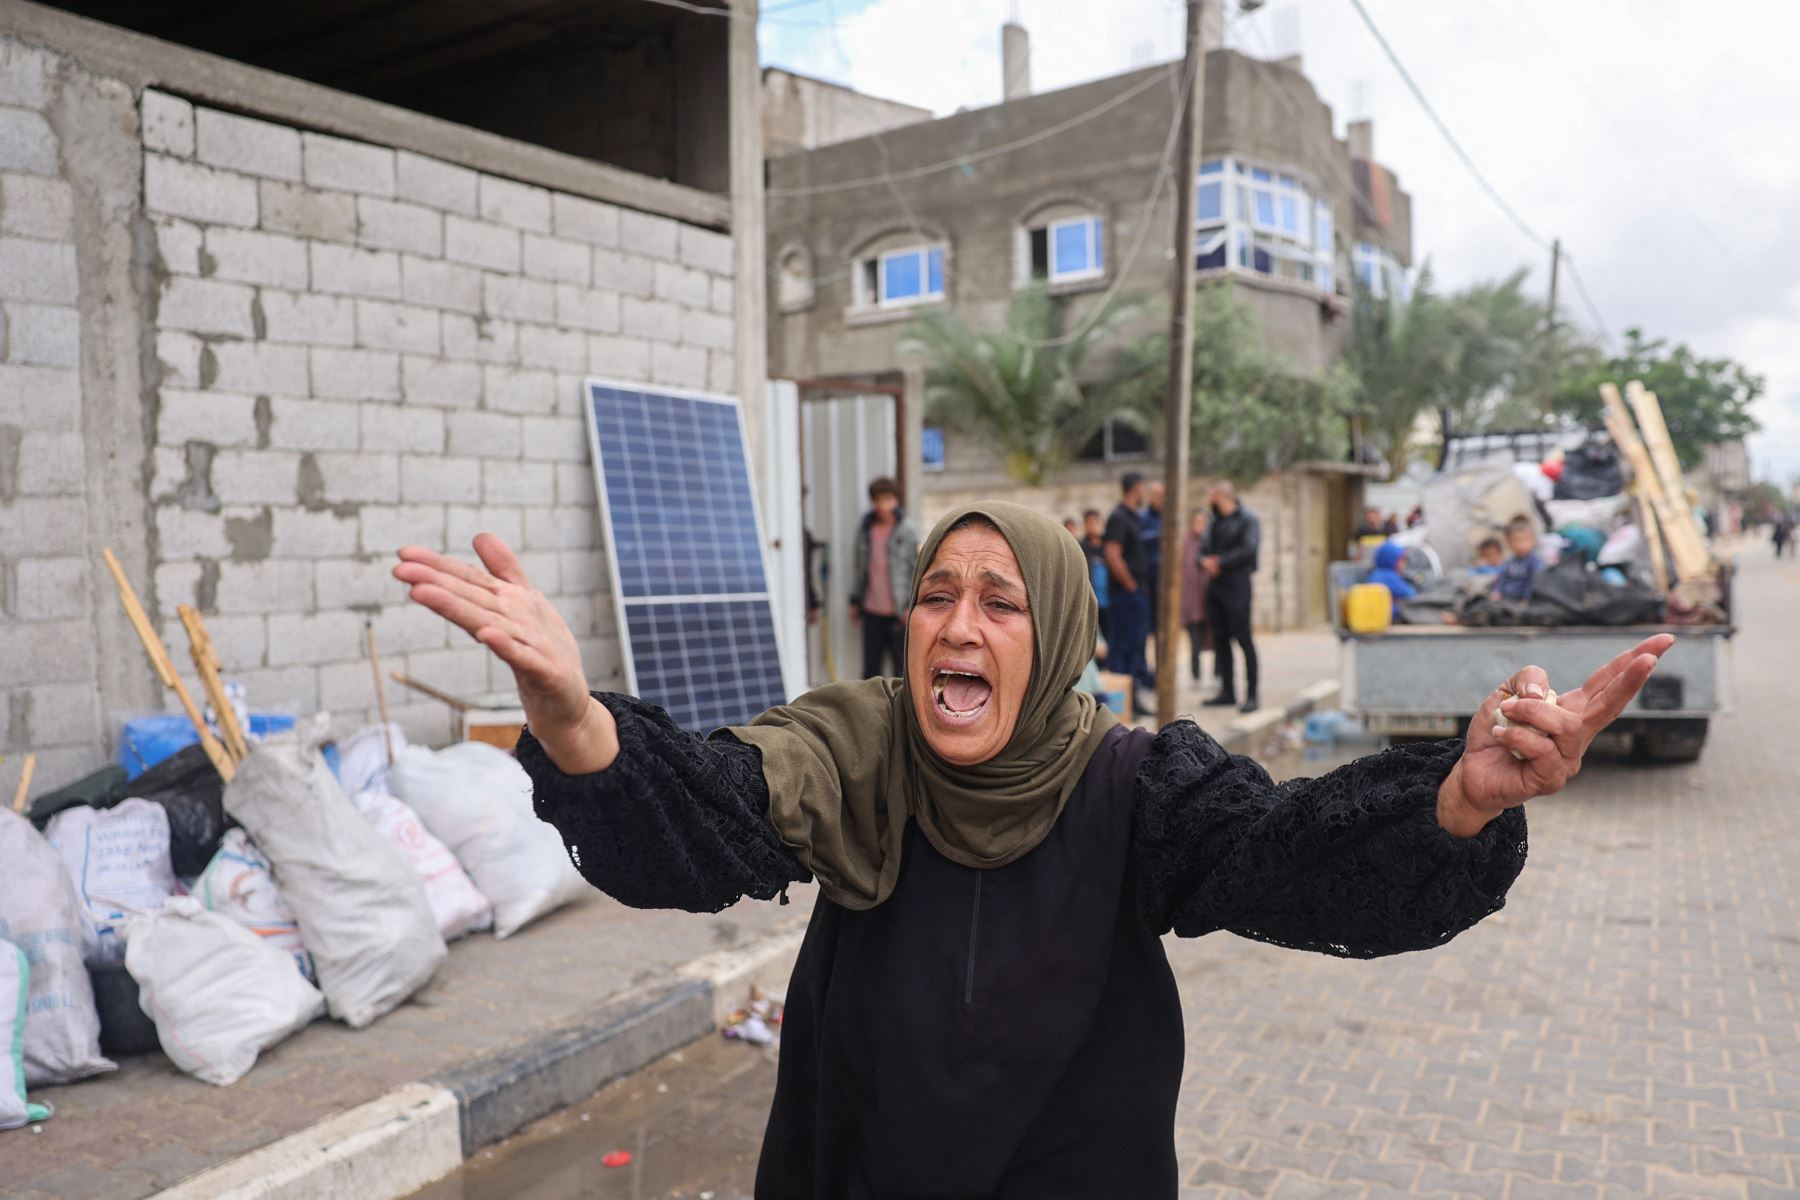 Una mujer reacciona mientras los palestinos desplazados en Rafah, en el sur de la Franja de Gaza, empacan sus pertenencias tras una orden de evacuación del ejército israelí , en medio del conflicto en curso entre Israel y el movimiento palestino Hamas.
Foto: AFP